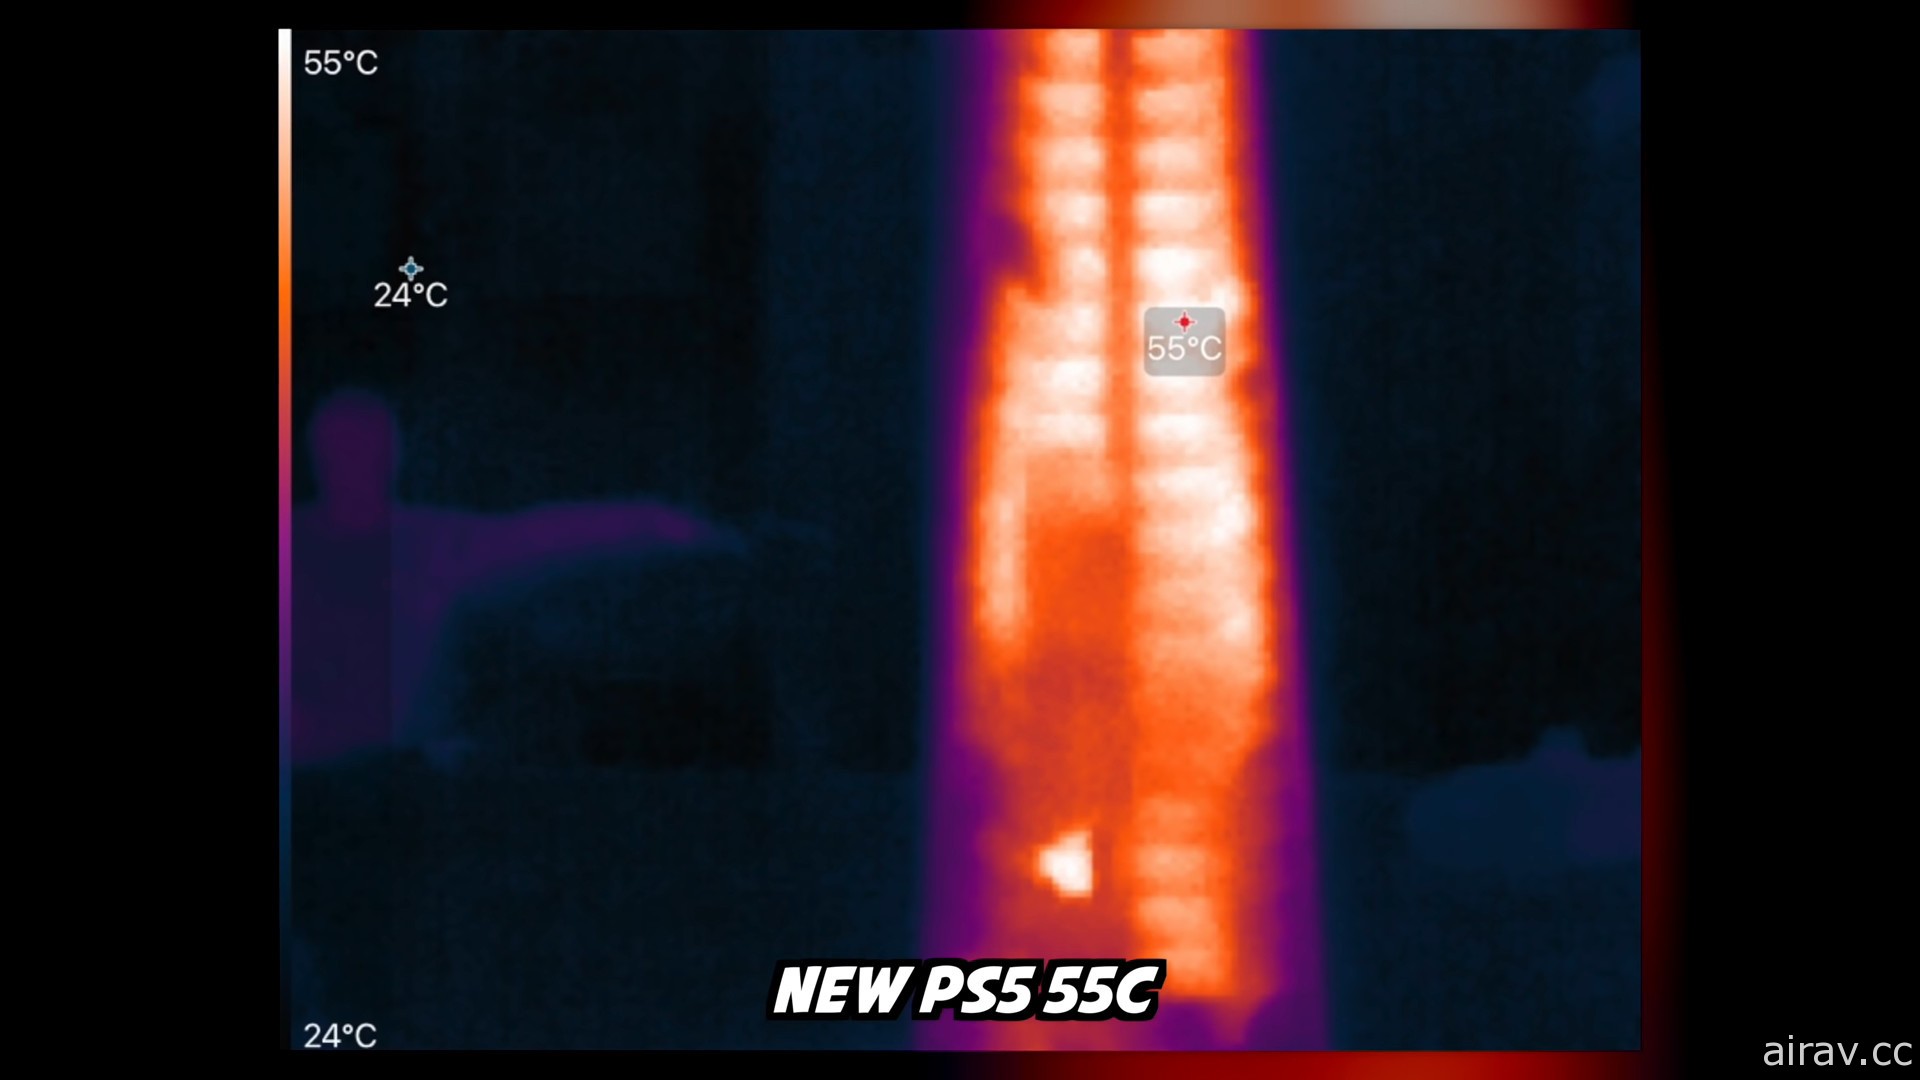 国外 YouTuber 拆机验证新型号 PS5 主机变更点 确认散热片尺寸明显 “缩水”